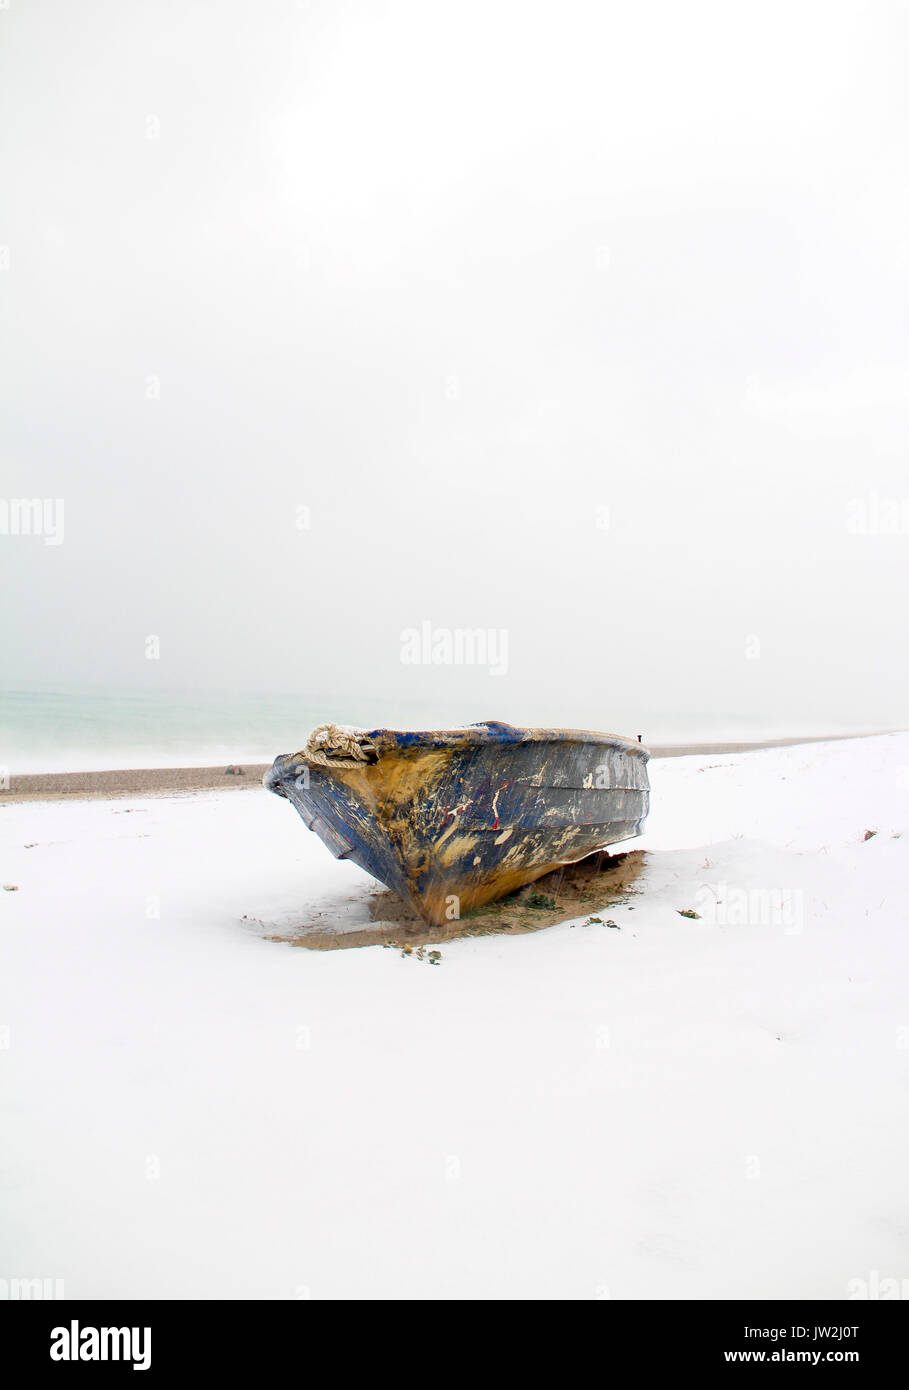 Vieux bateau en bois bleu abandonné sous la neige blanche sur la plage, le lac recouvert de neige et des traces de pied, vue panoramique de paysage d'hiver à la plage Banque D'Images